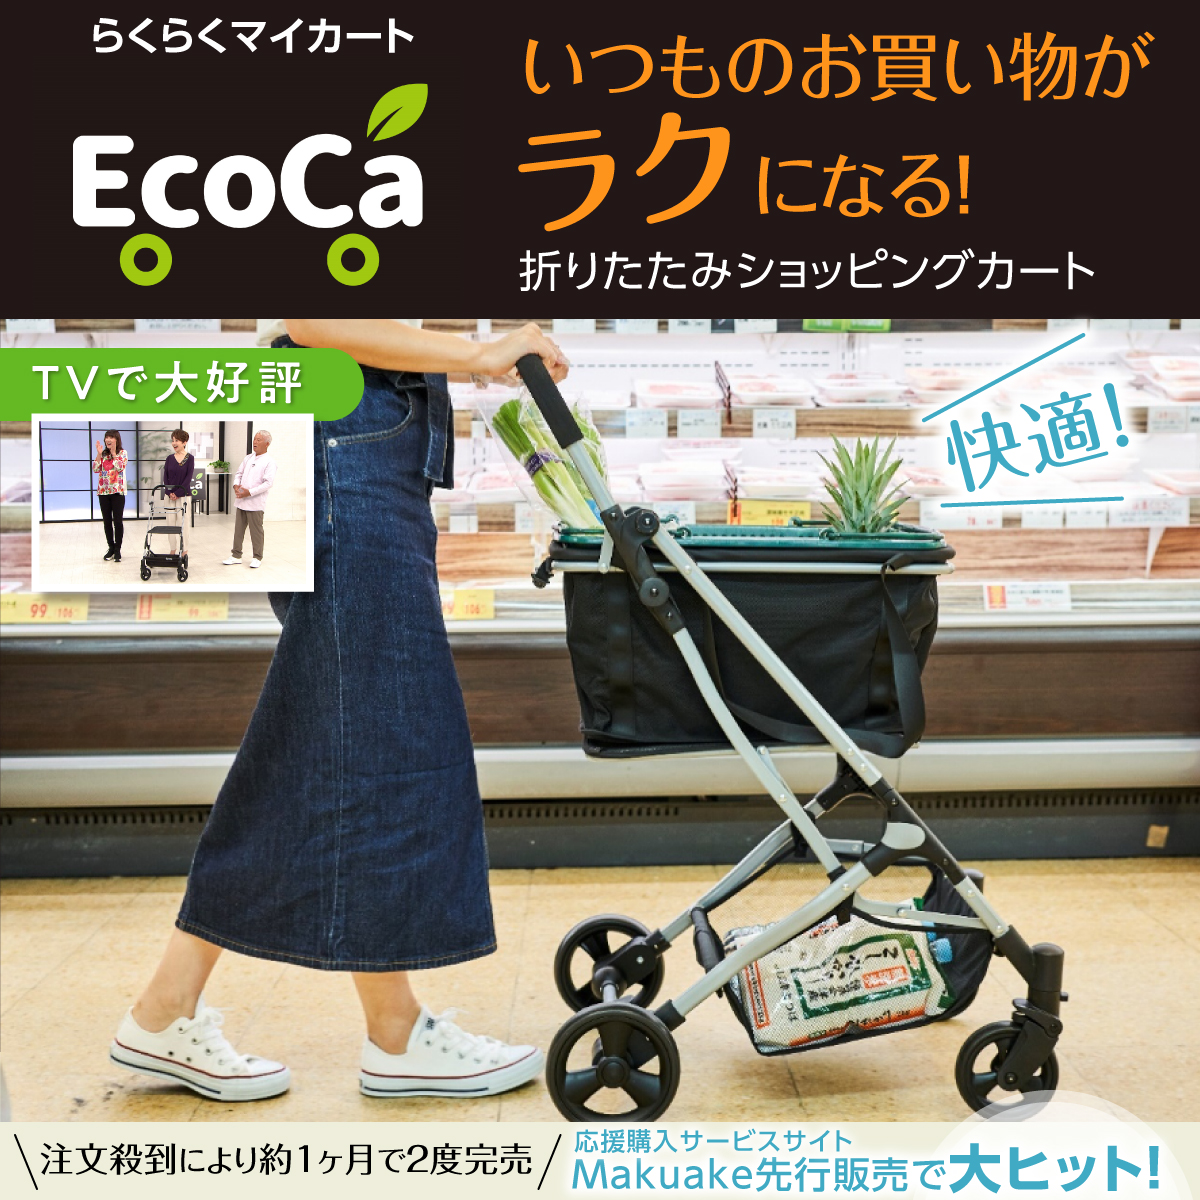 マイバック2個セット】Ecoca エコカ (本体+マイバッグ2個)【Bタイプ 